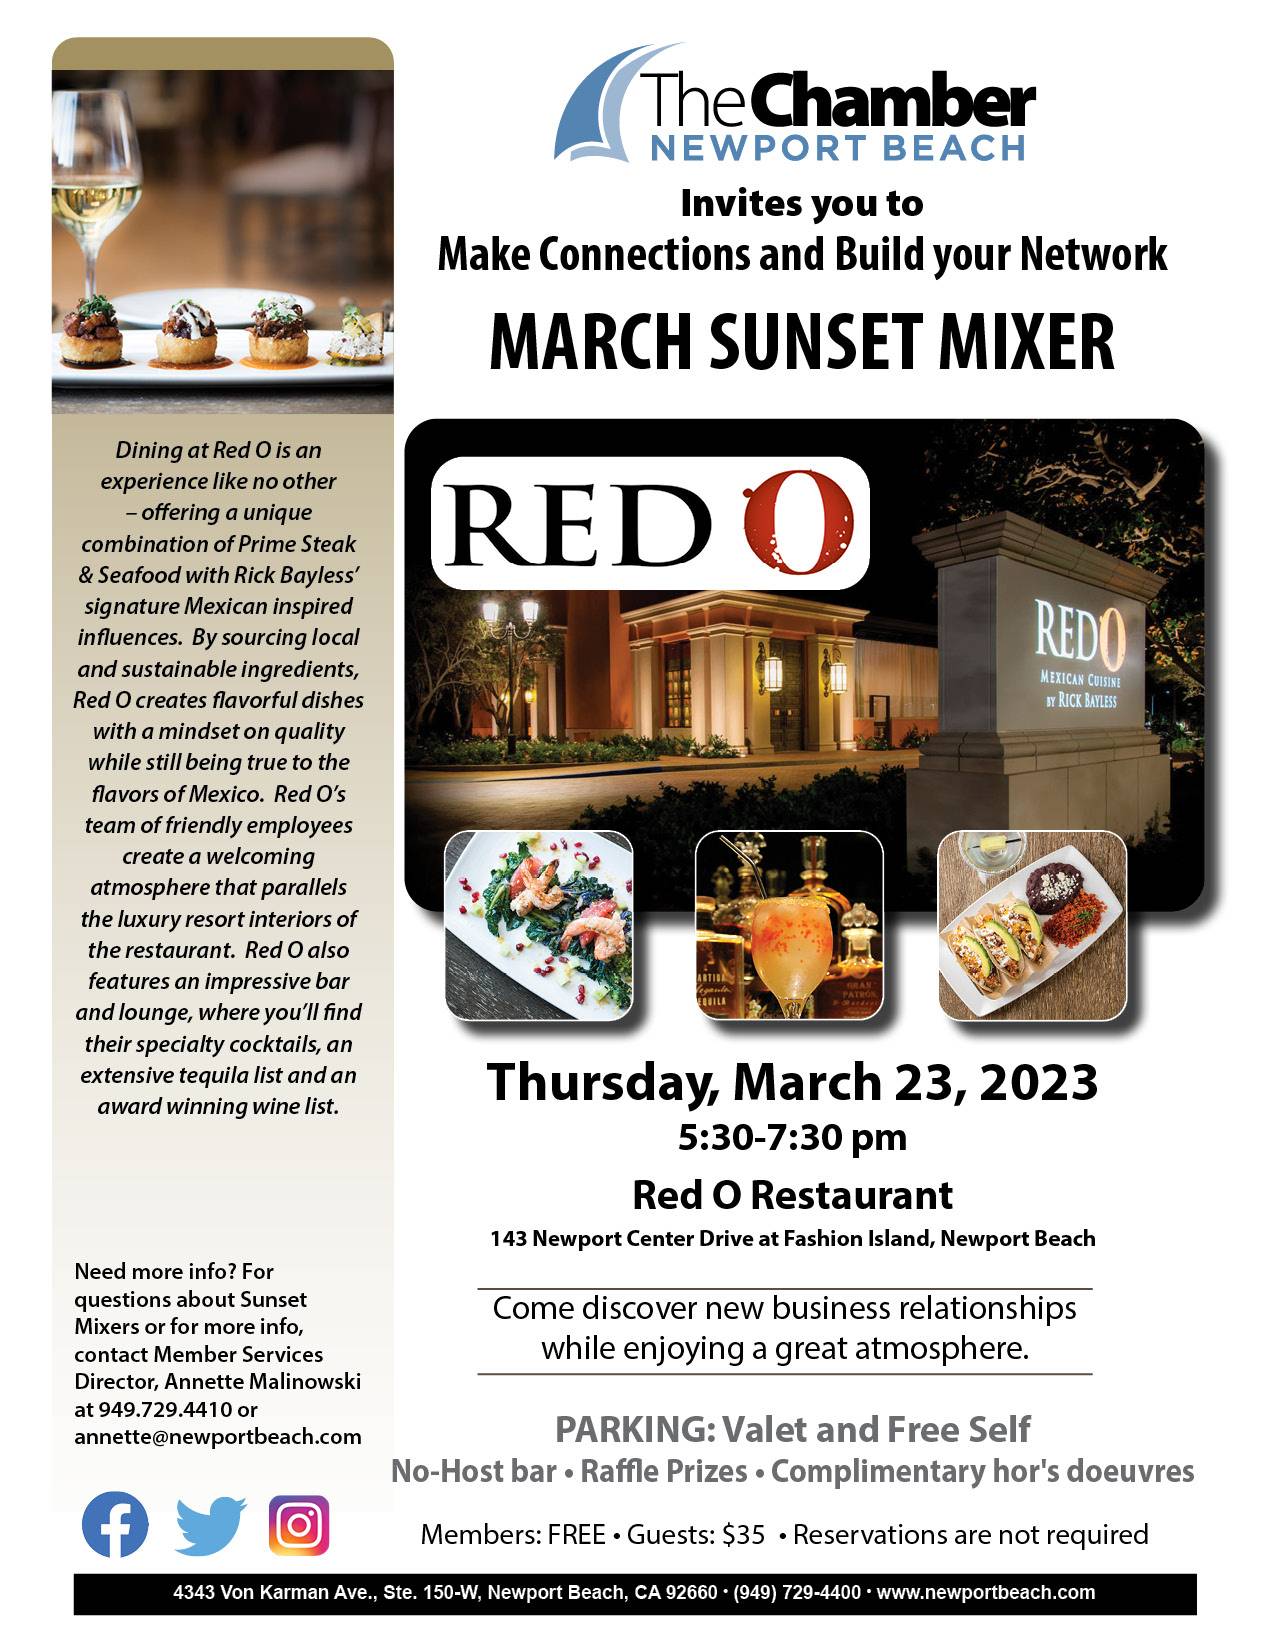 Red O Restaurant, Newport Beach - Newport Beach, CA (Fashion